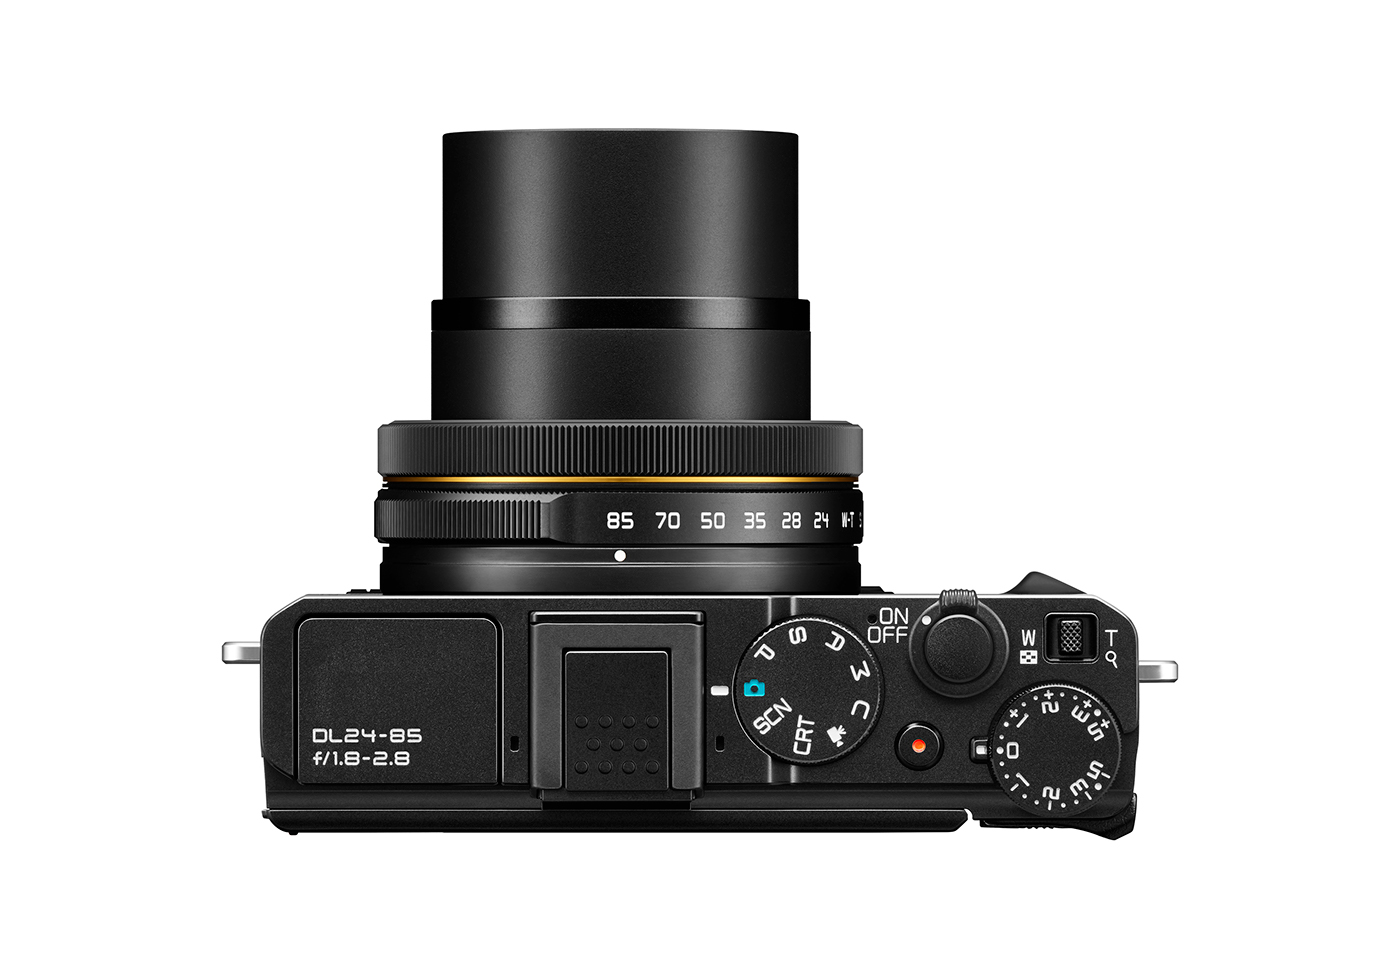 camera design product Nikon premium black cmf CAM Audio tool